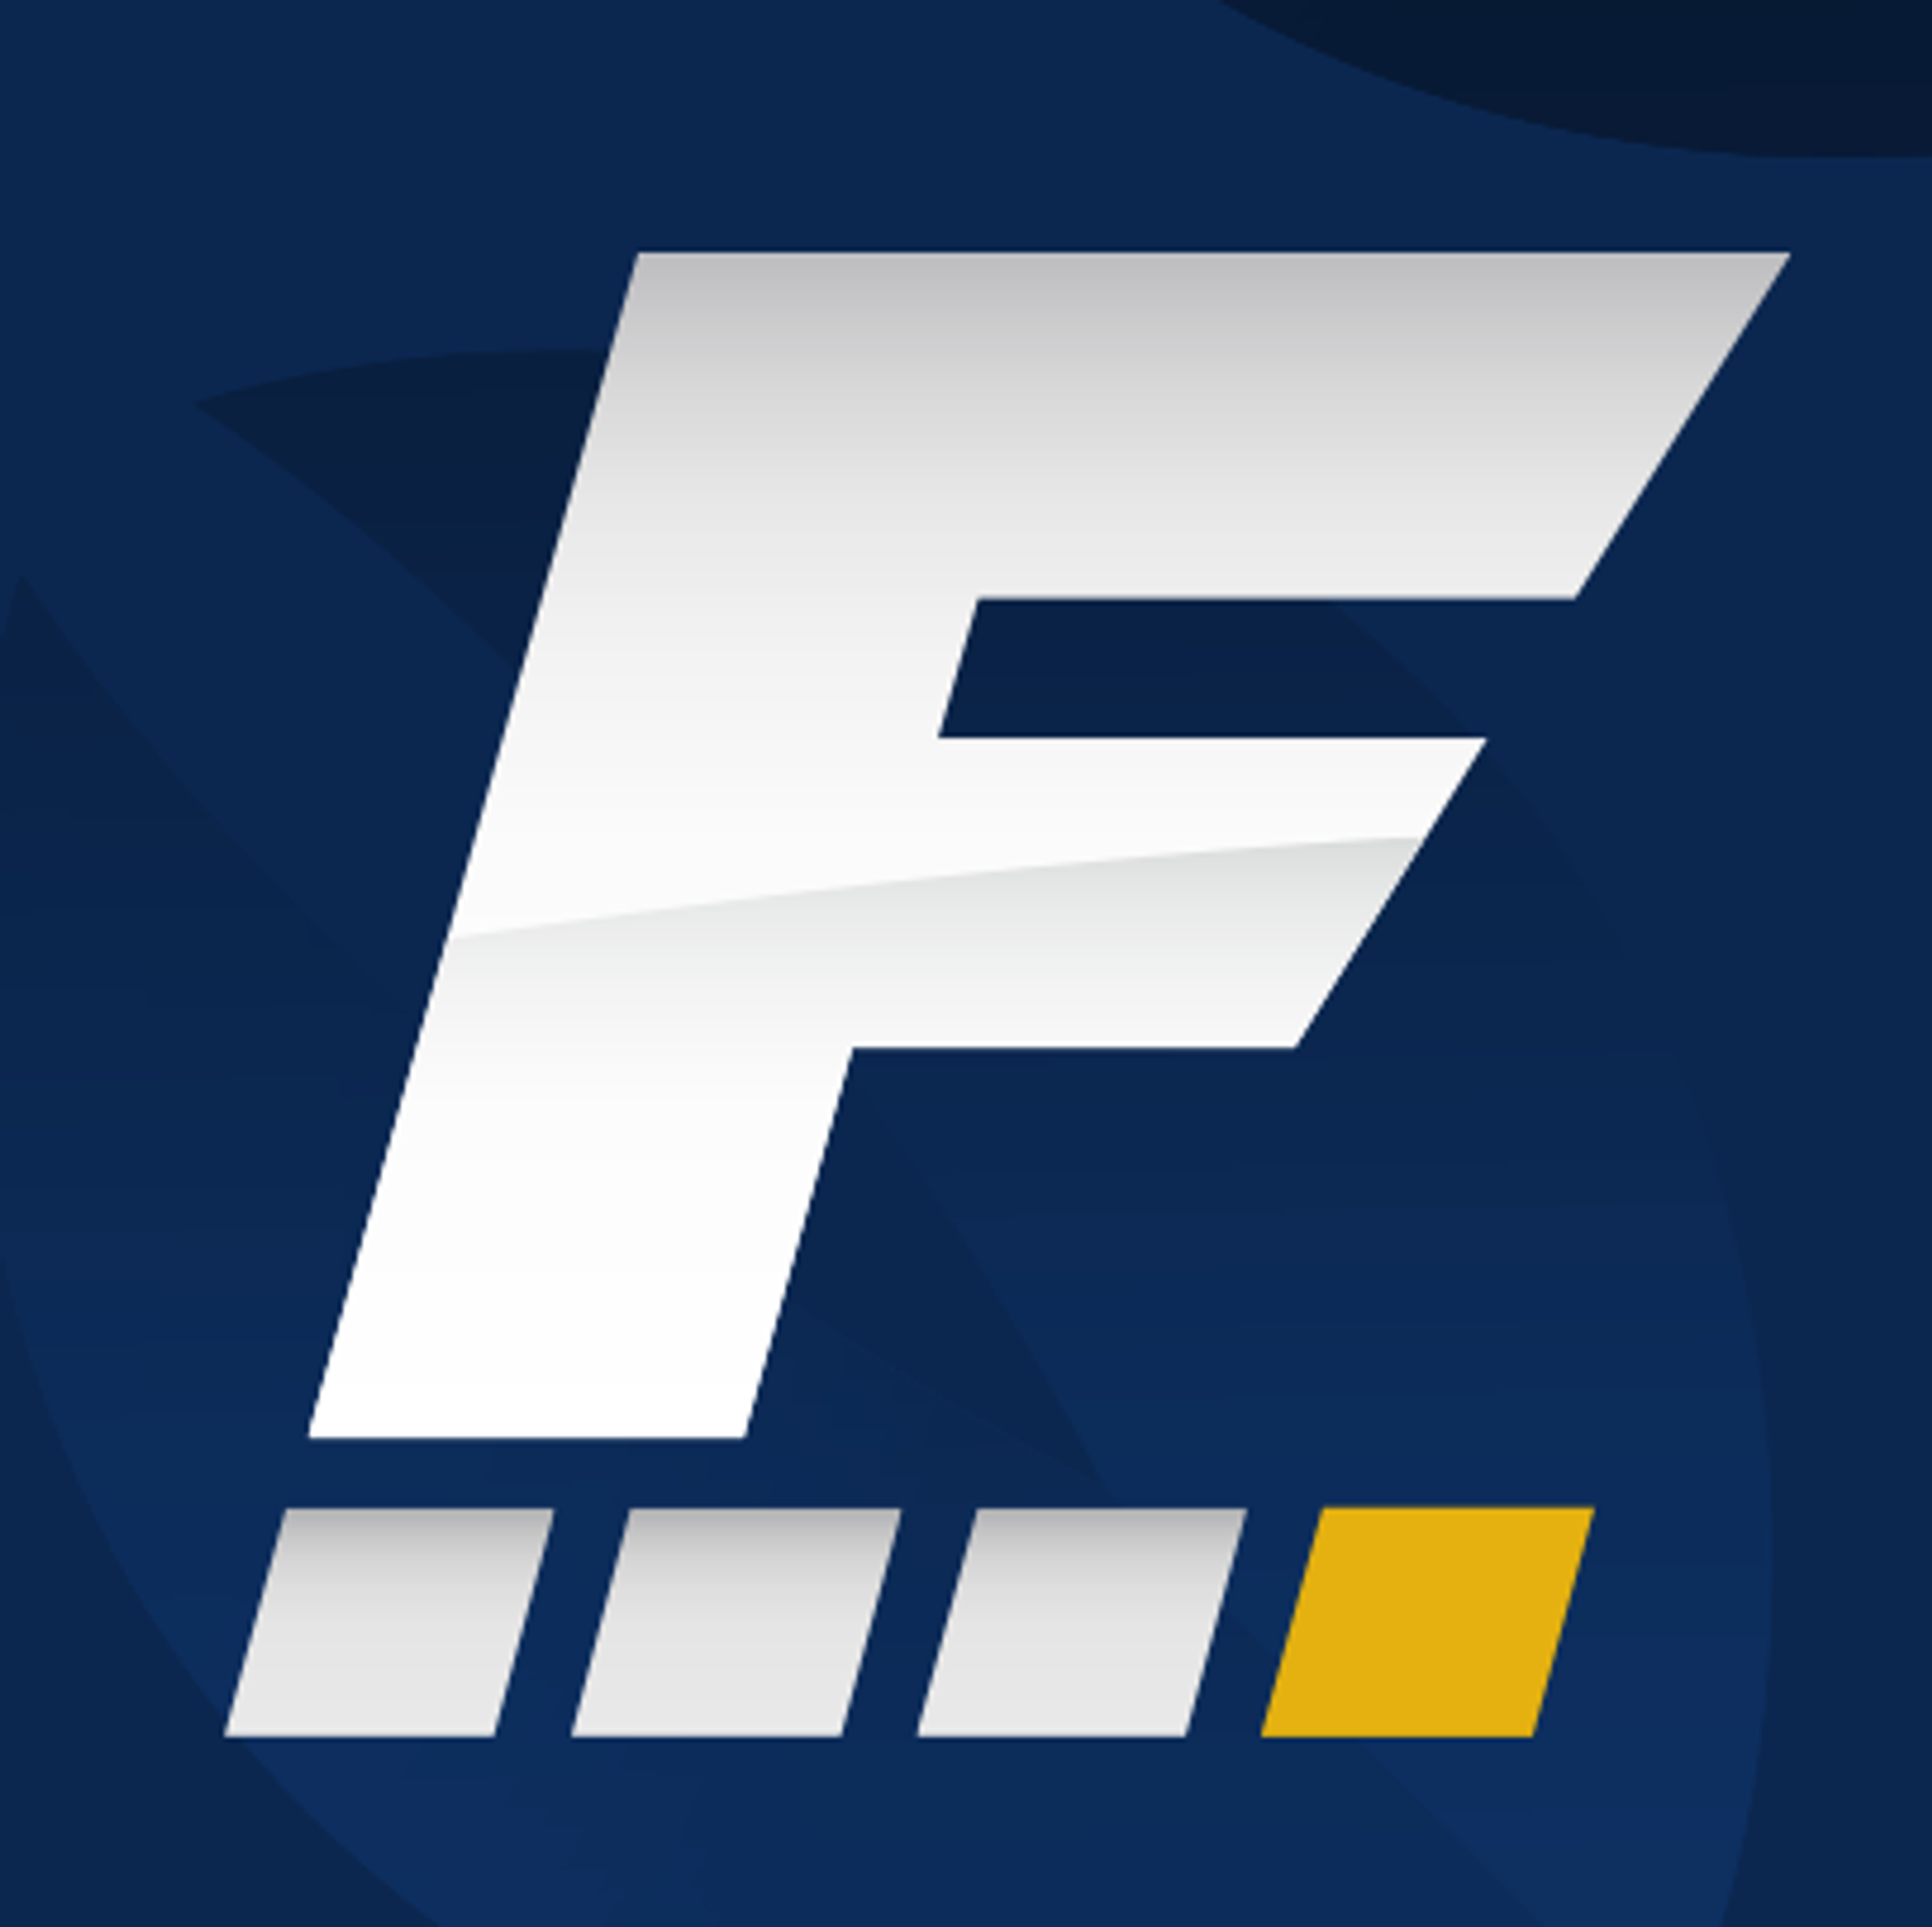 Fantasy Football Twitter logo